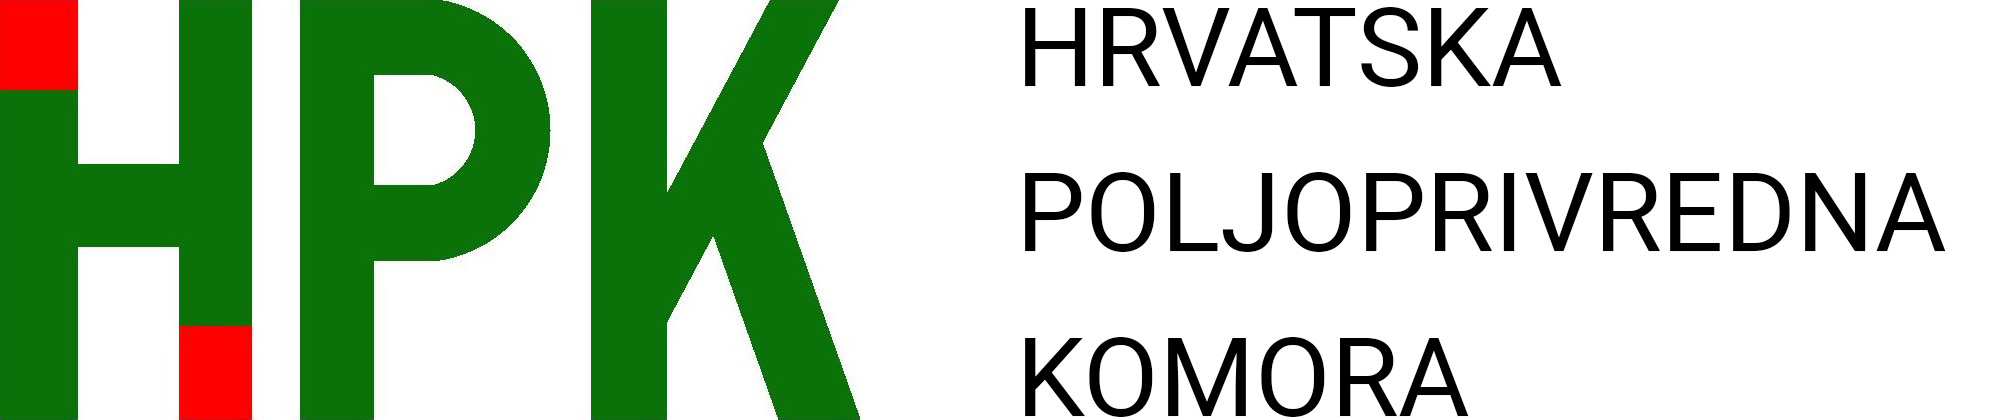 G. Jakopović o pogodnostima koje daje Komora svojim članovima | HPK